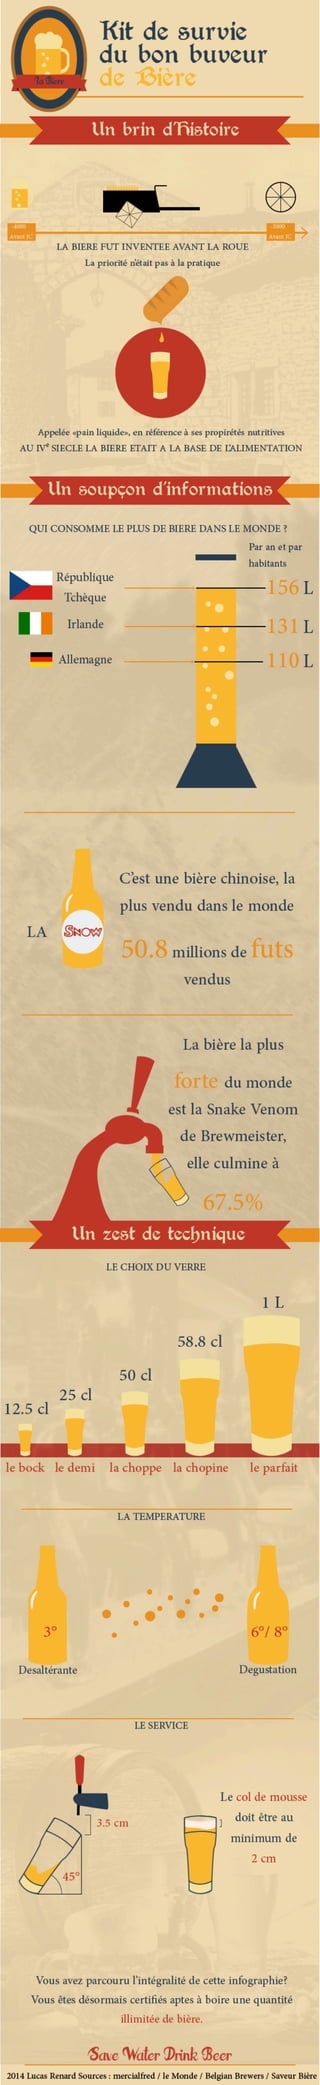 Infographie sur quelques données sur la bière par Lucas RENARD - MMI IUT de CHAMBERY